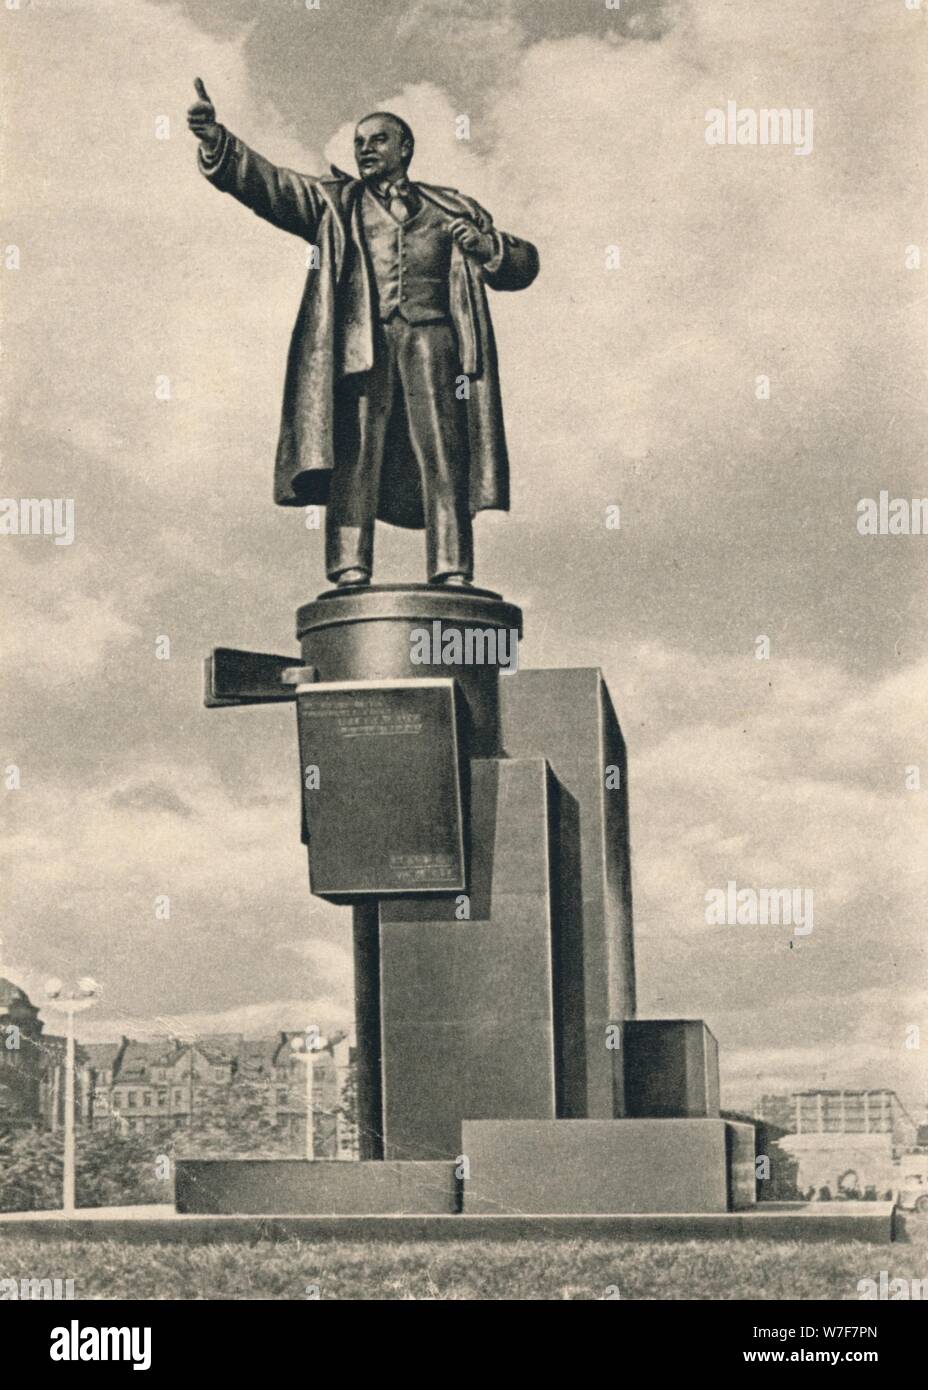 Enkmal zu Lenin durch Evseev, Shchuko und Gelfrejh, in St. Petersburg, Russland', c 1926. Künstler: Sergey Evseev, Vladimir Shchuko, Wladimir Gelfreich. Stockfoto